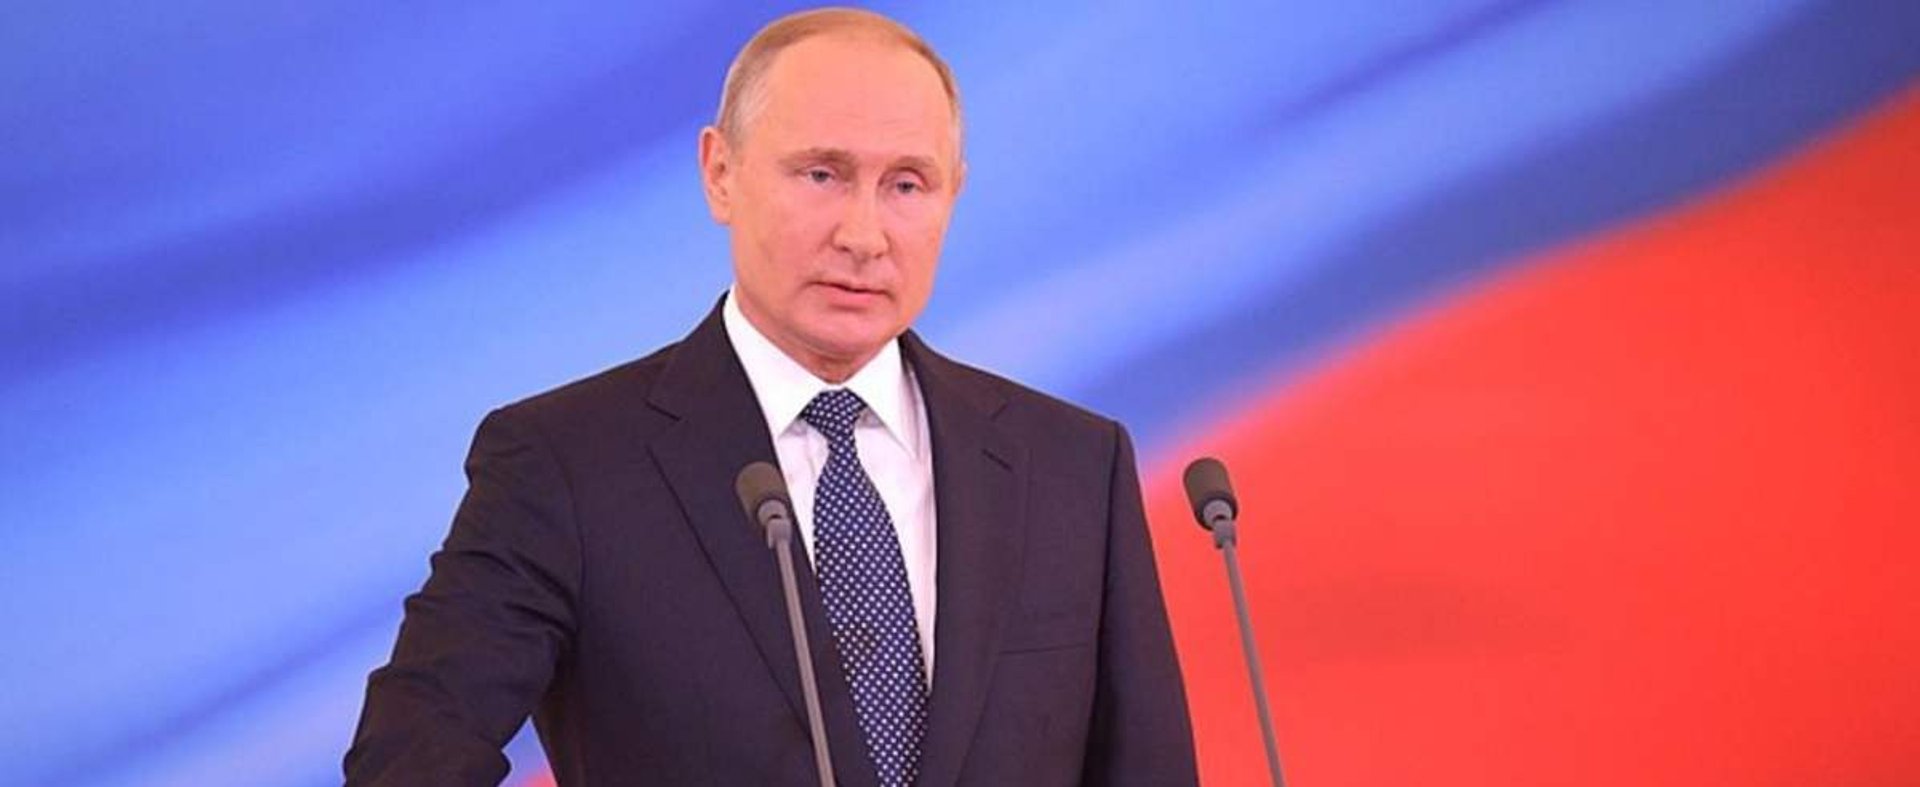 Vladimir Putin has been sworn in as President of Russia (2018)